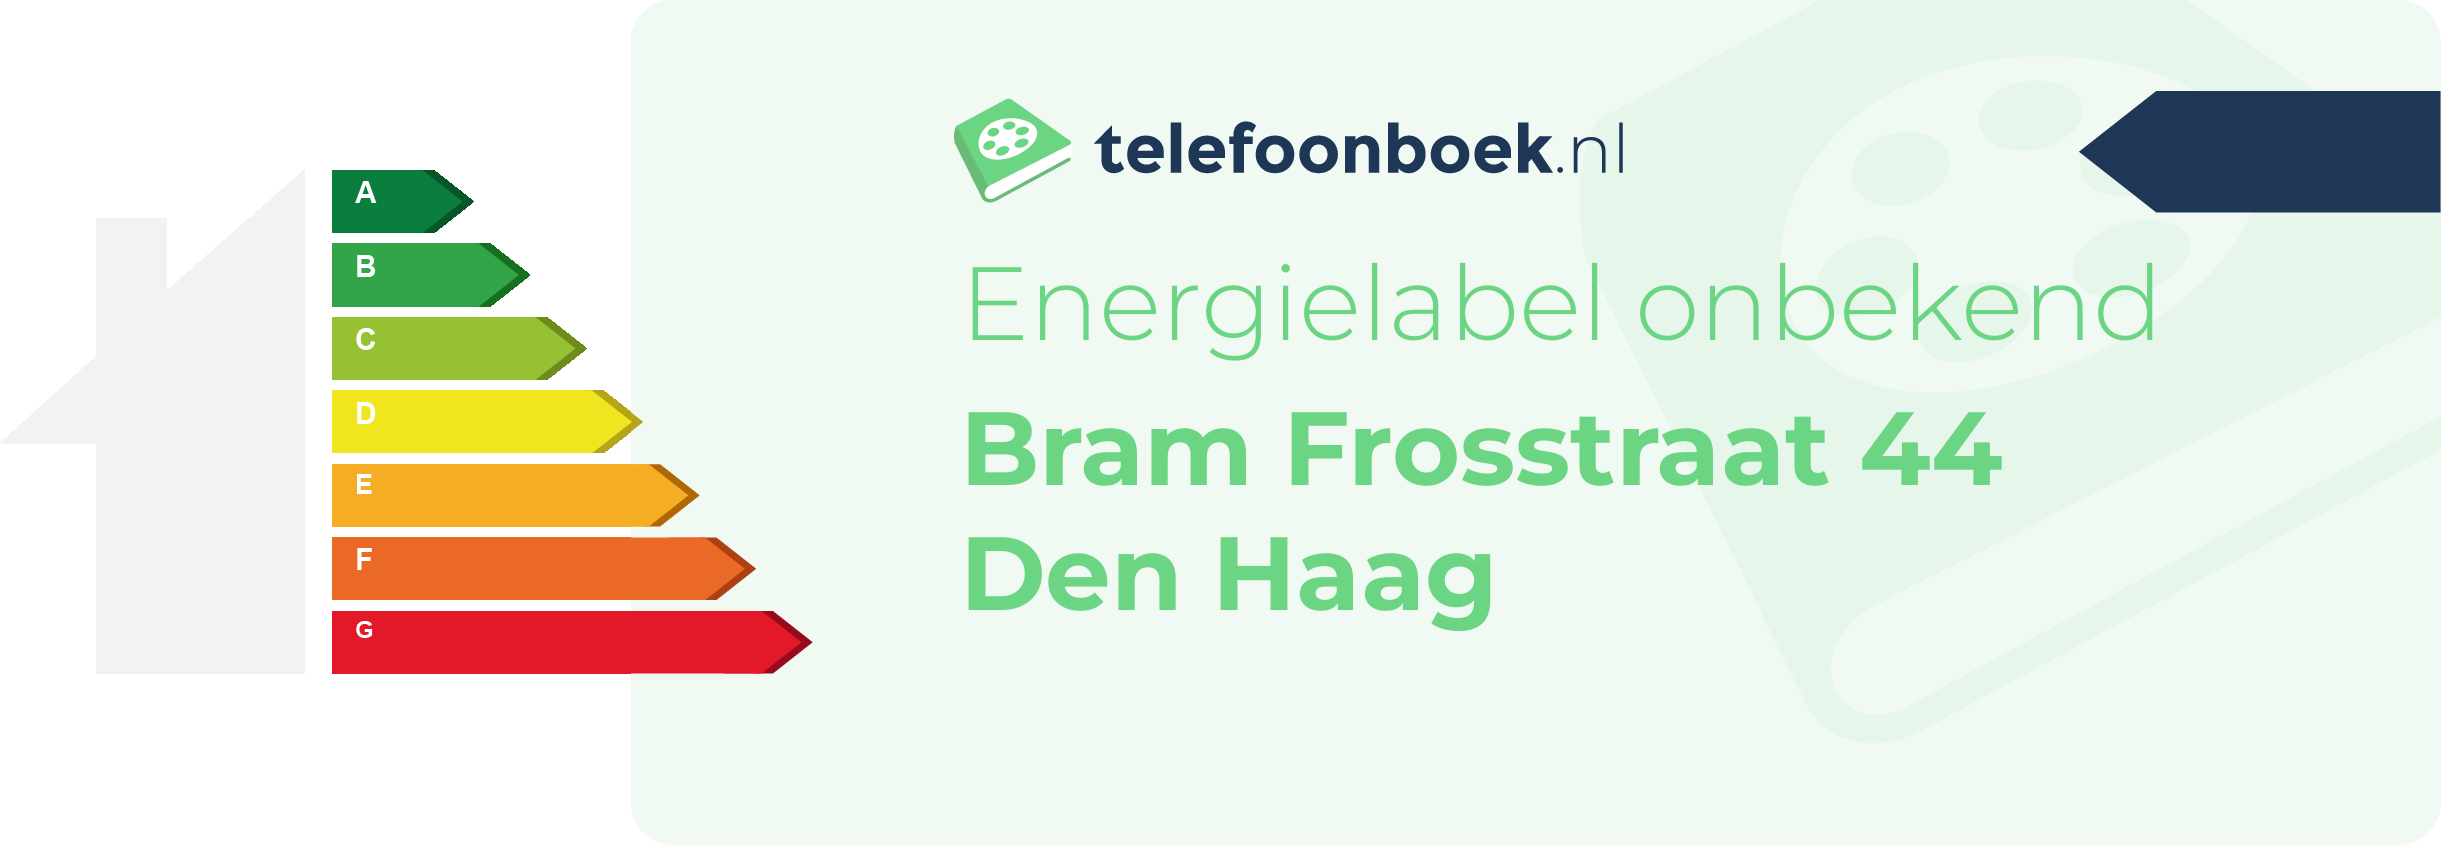 Energielabel Bram Frosstraat 44 Den Haag